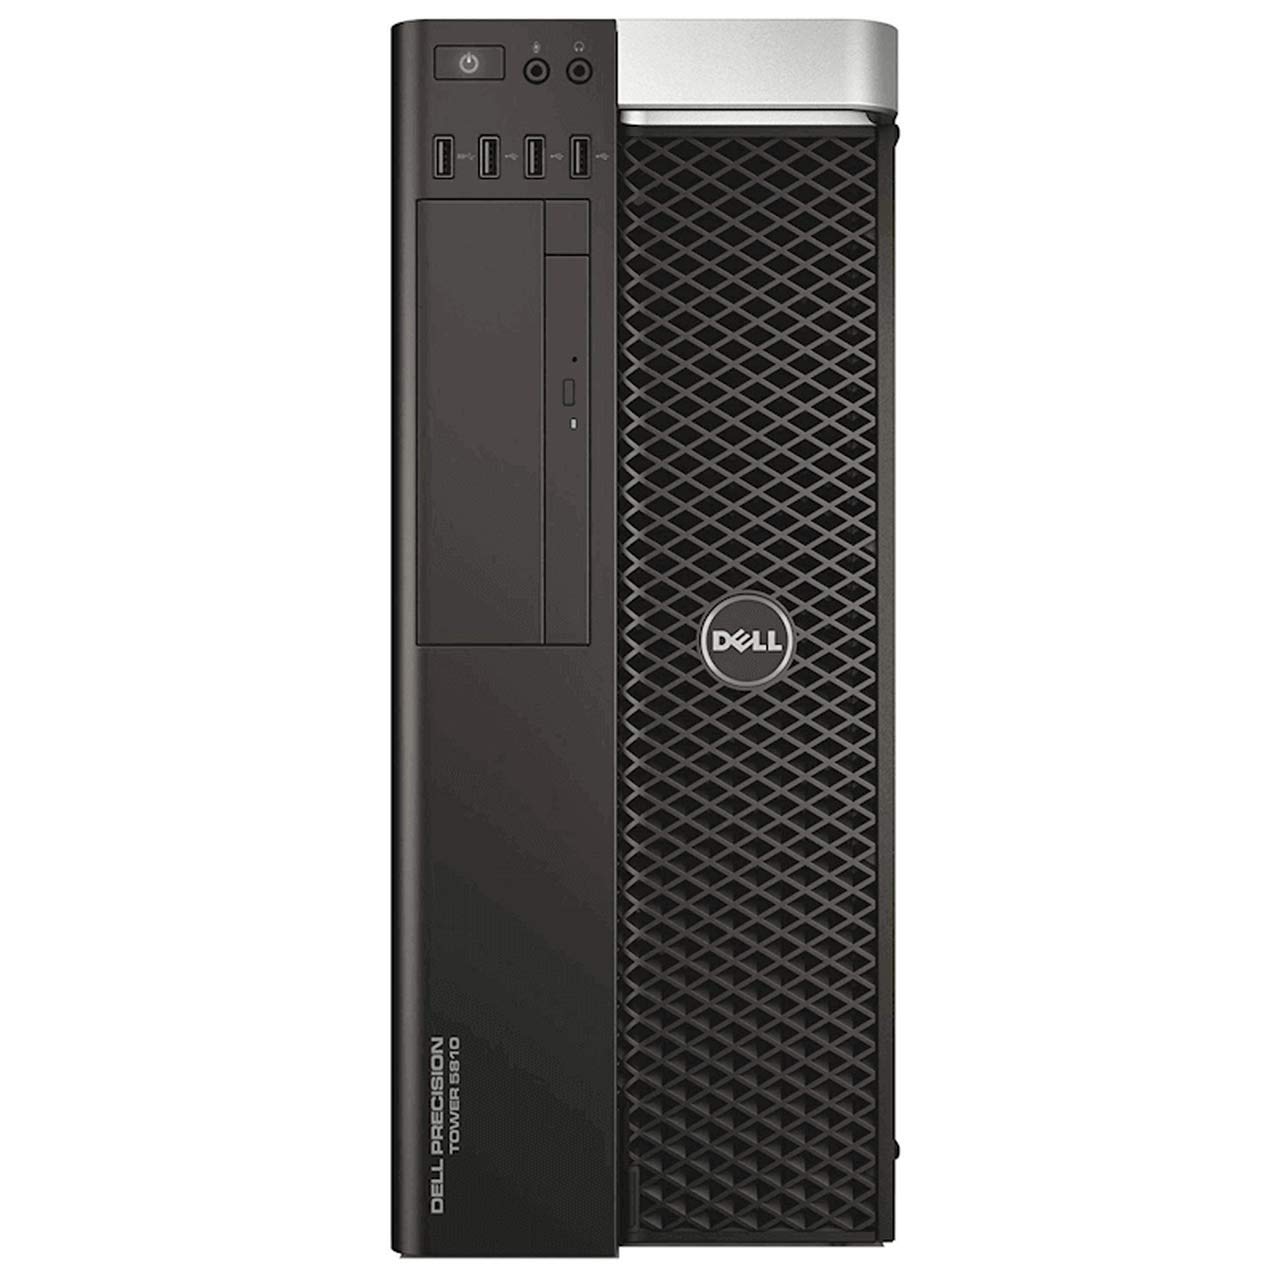 Dell Precision T5810 Mid-Tower Workstation - Intel Xeon E5-1620 v3 3.5GHz 4 Core Processor, 64GB DDR4 Memory, 4TB HDD, Nvidia Quadro K4200 Graphics...